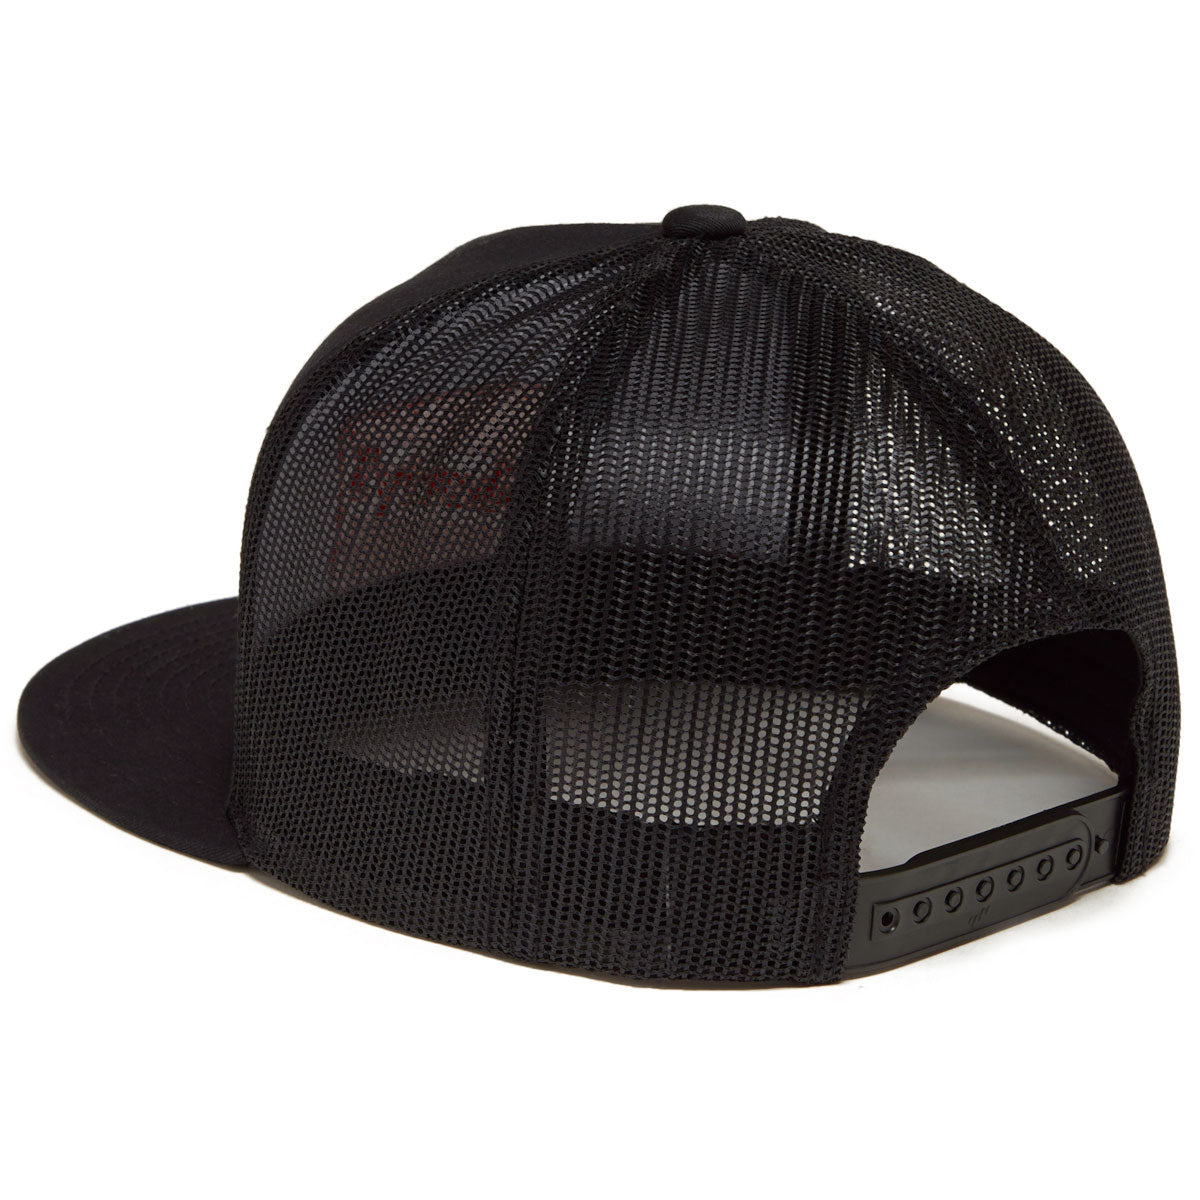 Shorty's OG Logo Snapback Hat - Black image 2